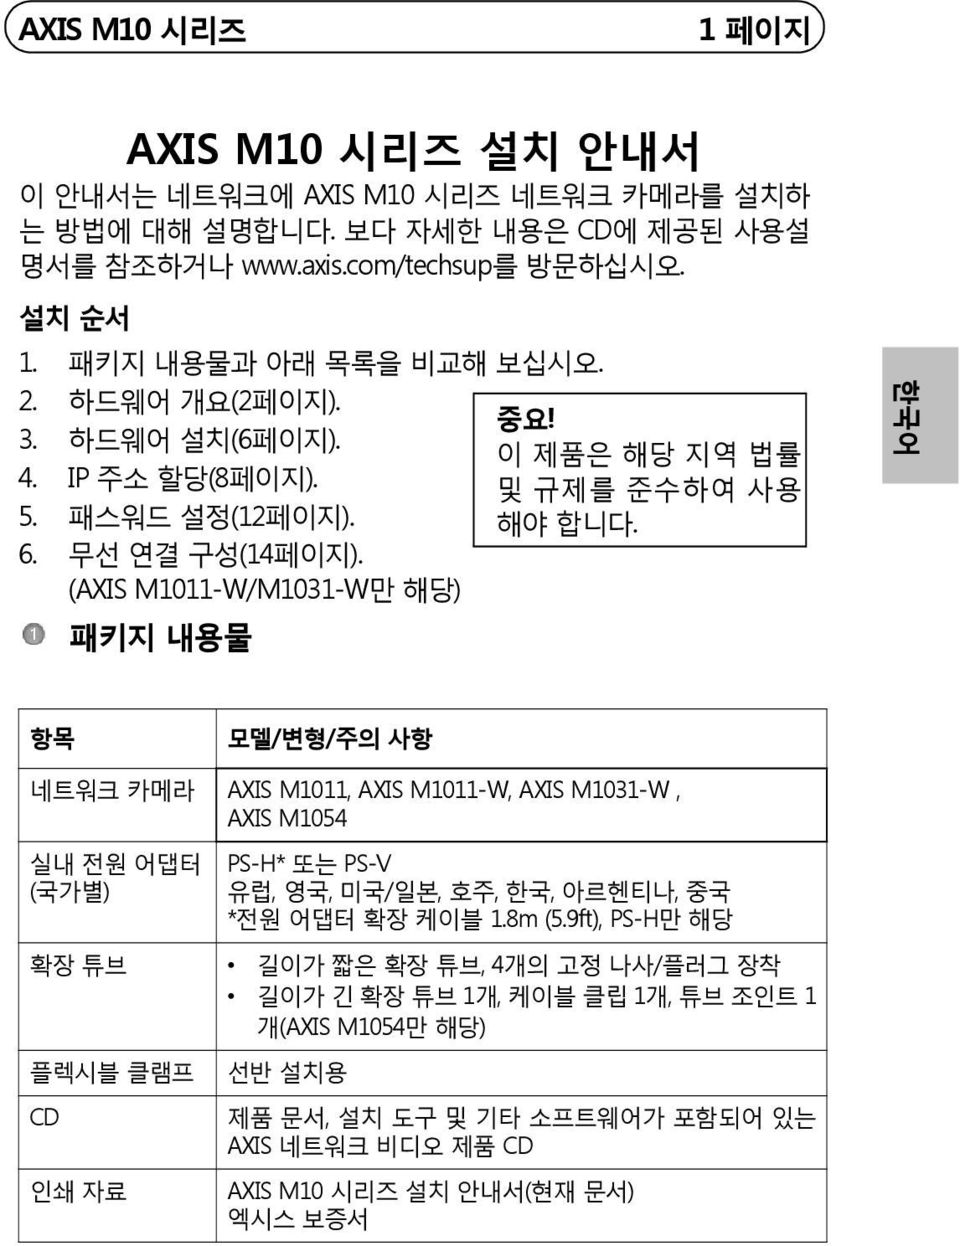 (AXIS M1011-W/M1031-W만 해당) 패키지 내용물 한국어 항목 모델/변형/주의 사항 네트워크 카메라 AXIS M1011, AXIS M1011-W, AXIS M1031-W, AXIS M1054 실내 전원 어댑터 (국가별) PS-H* 또는 PS-V 유럽, 영국, 미국/일본, 호주, 한국, 아르헨티나, 중국 *전원 어댑터